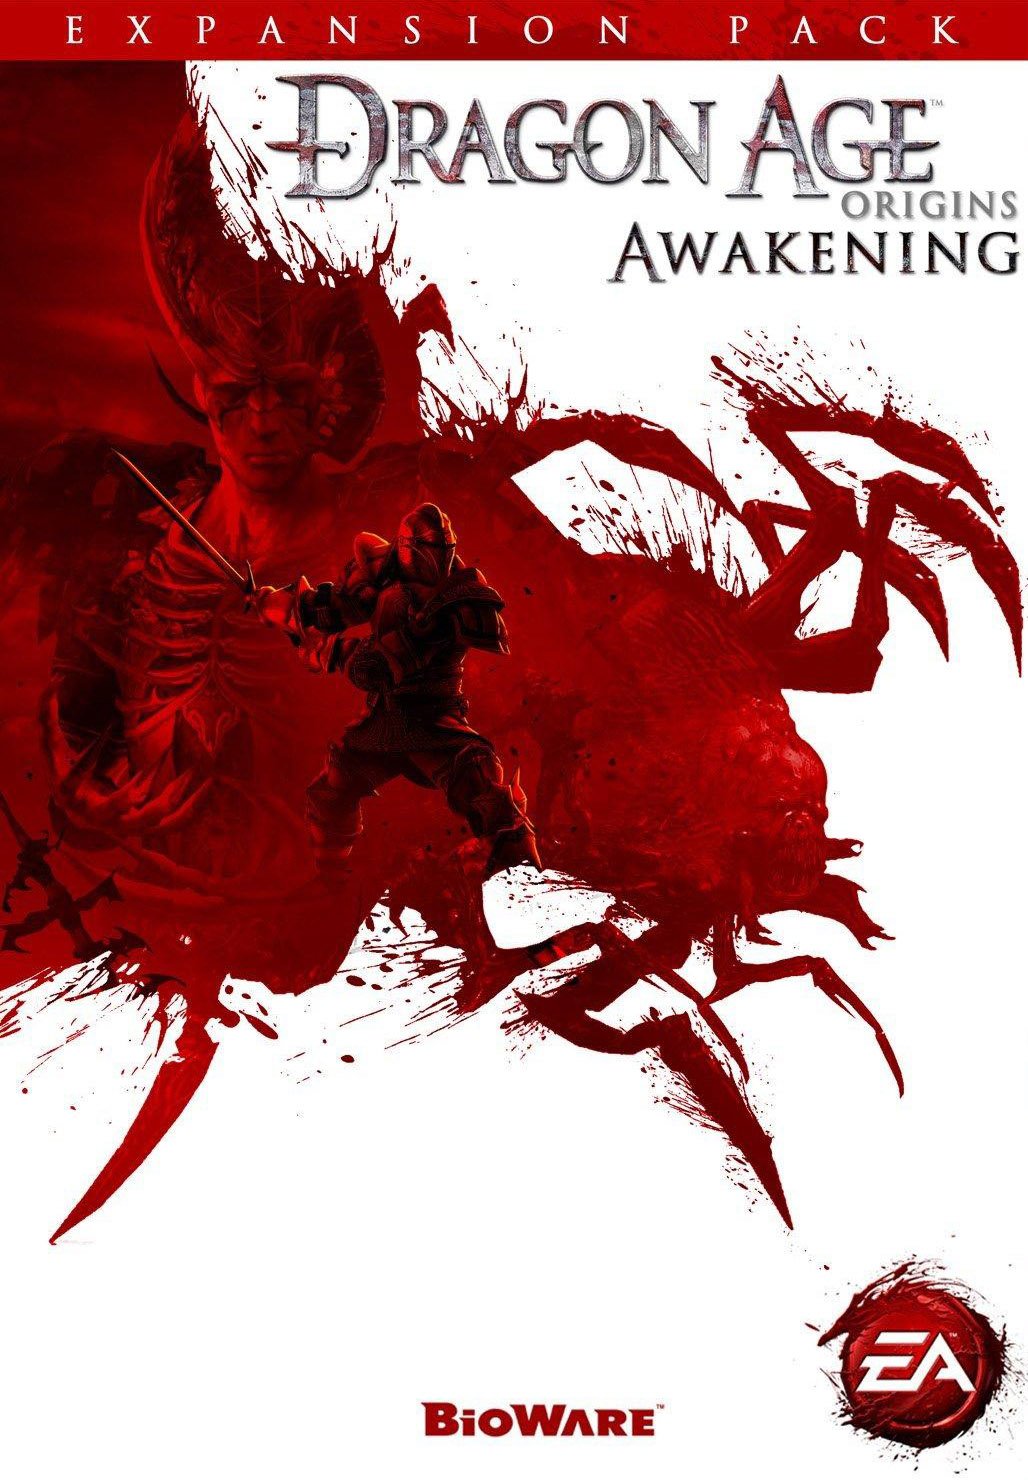 dragon age awakening steam download free